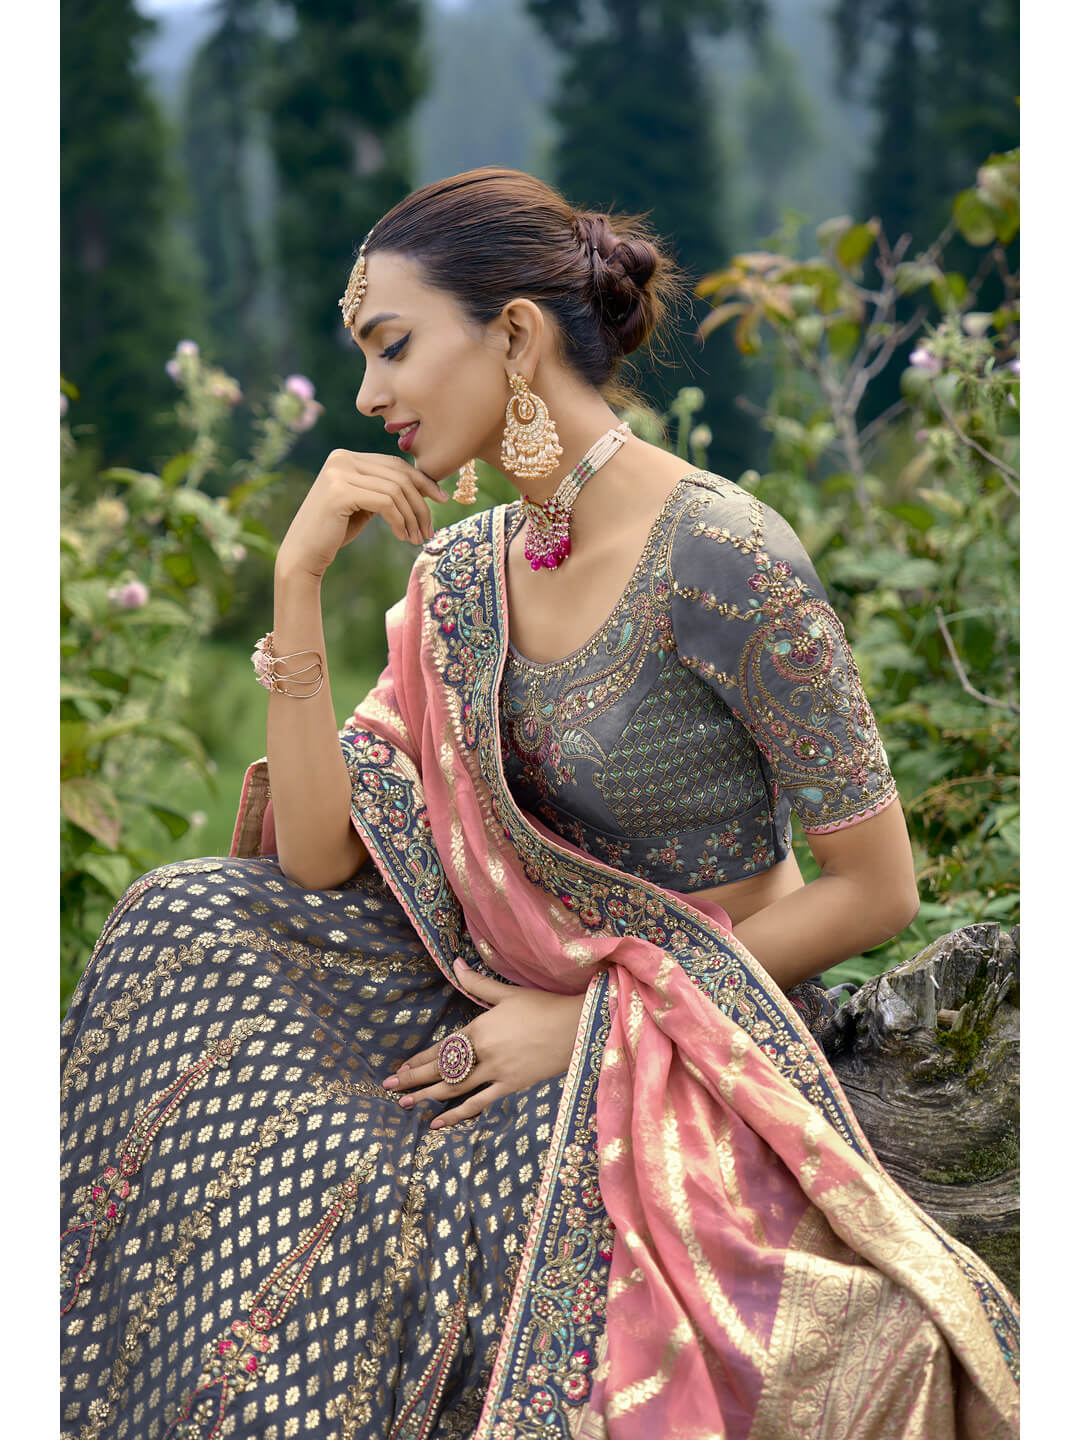 indian brides should pick these colours latest lehenga designs photos  images this wedding season 2022 rncr | शादी के सीजन दुल्हन पहनेंगी इस रंग  का लहंगा तो उनकी खूबसूरती का दीवाना हो